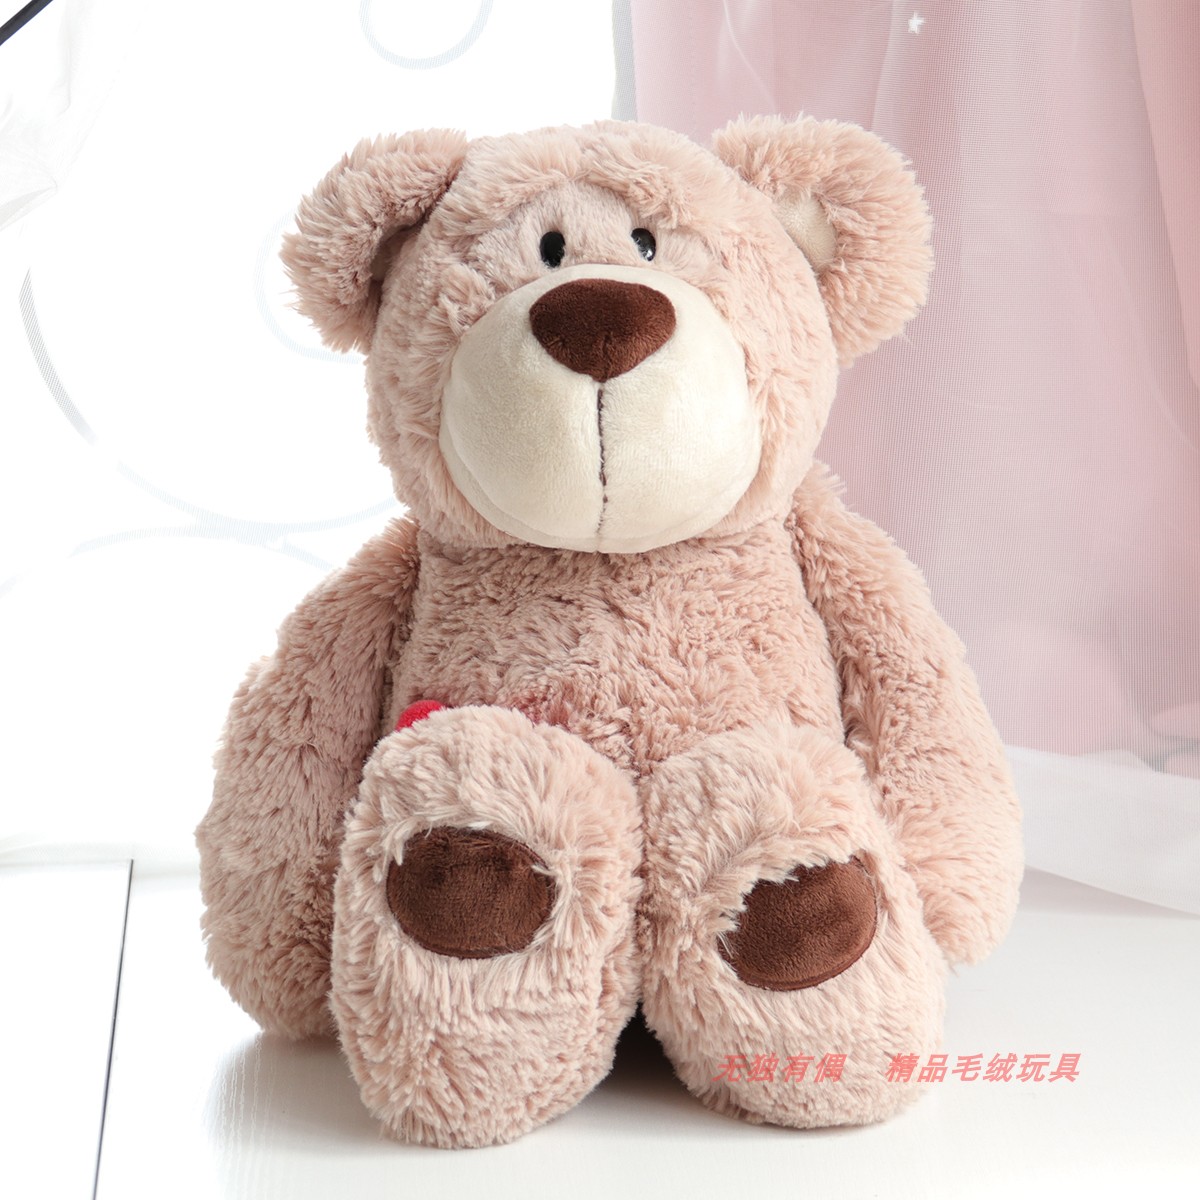 爱心熊泰迪熊毛绒玩具情侣抱抱熊安抚陪睡娃娃儿童礼物送女友玩偶